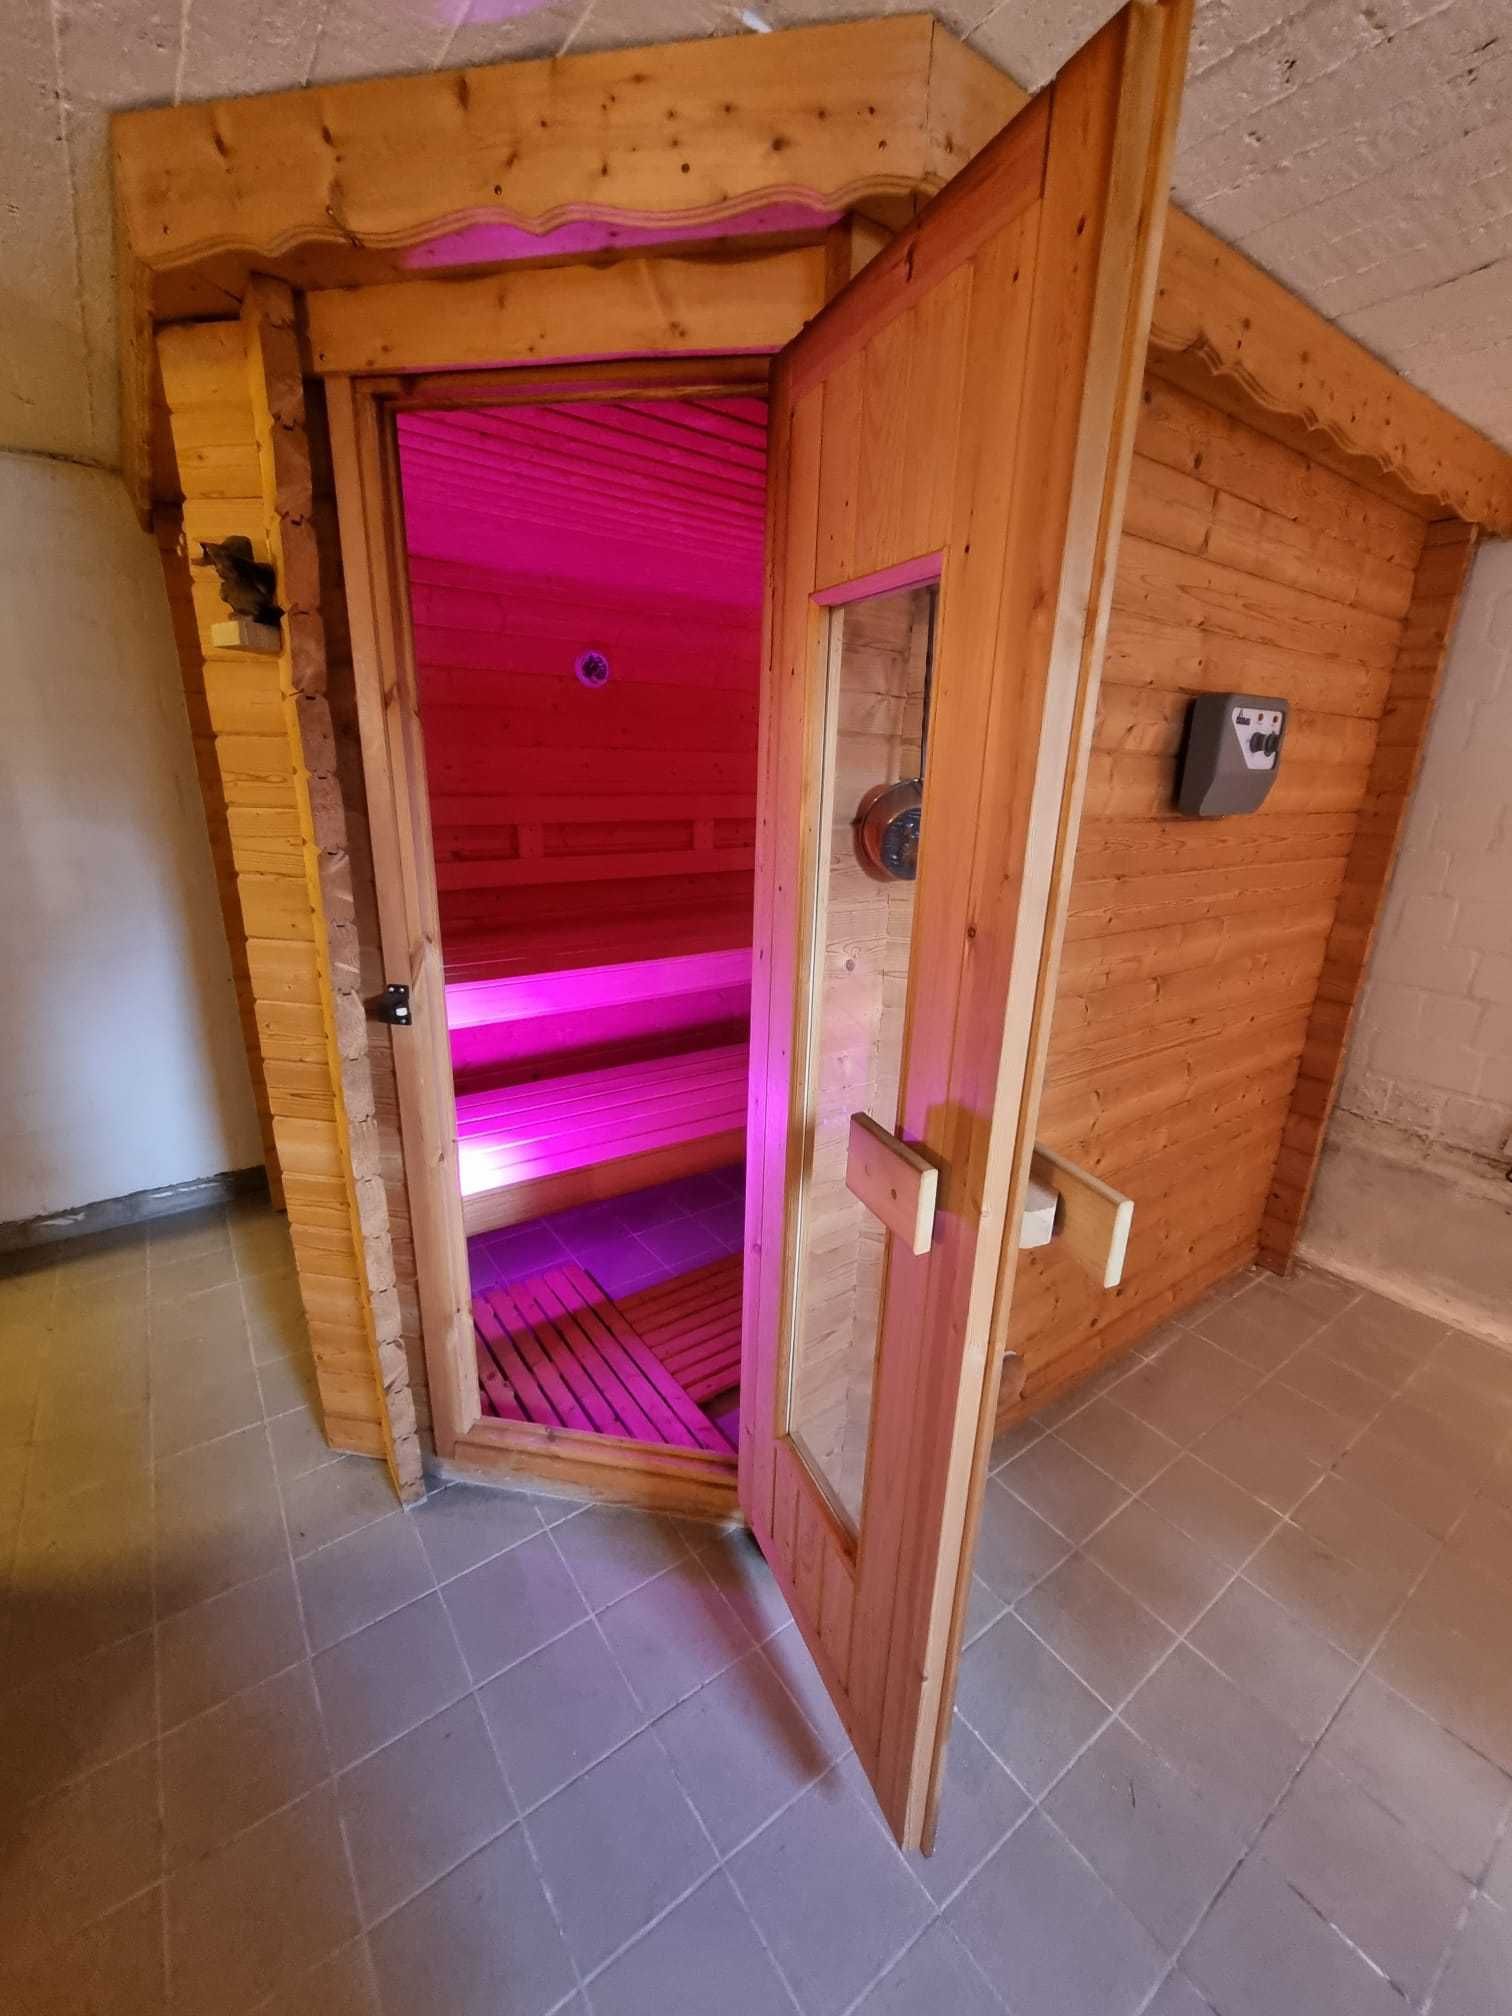 Sauna Finnleo Duża sucha FIŃSKA Sauna do 8 osób Piec GÓRSKA Sauna 9kv